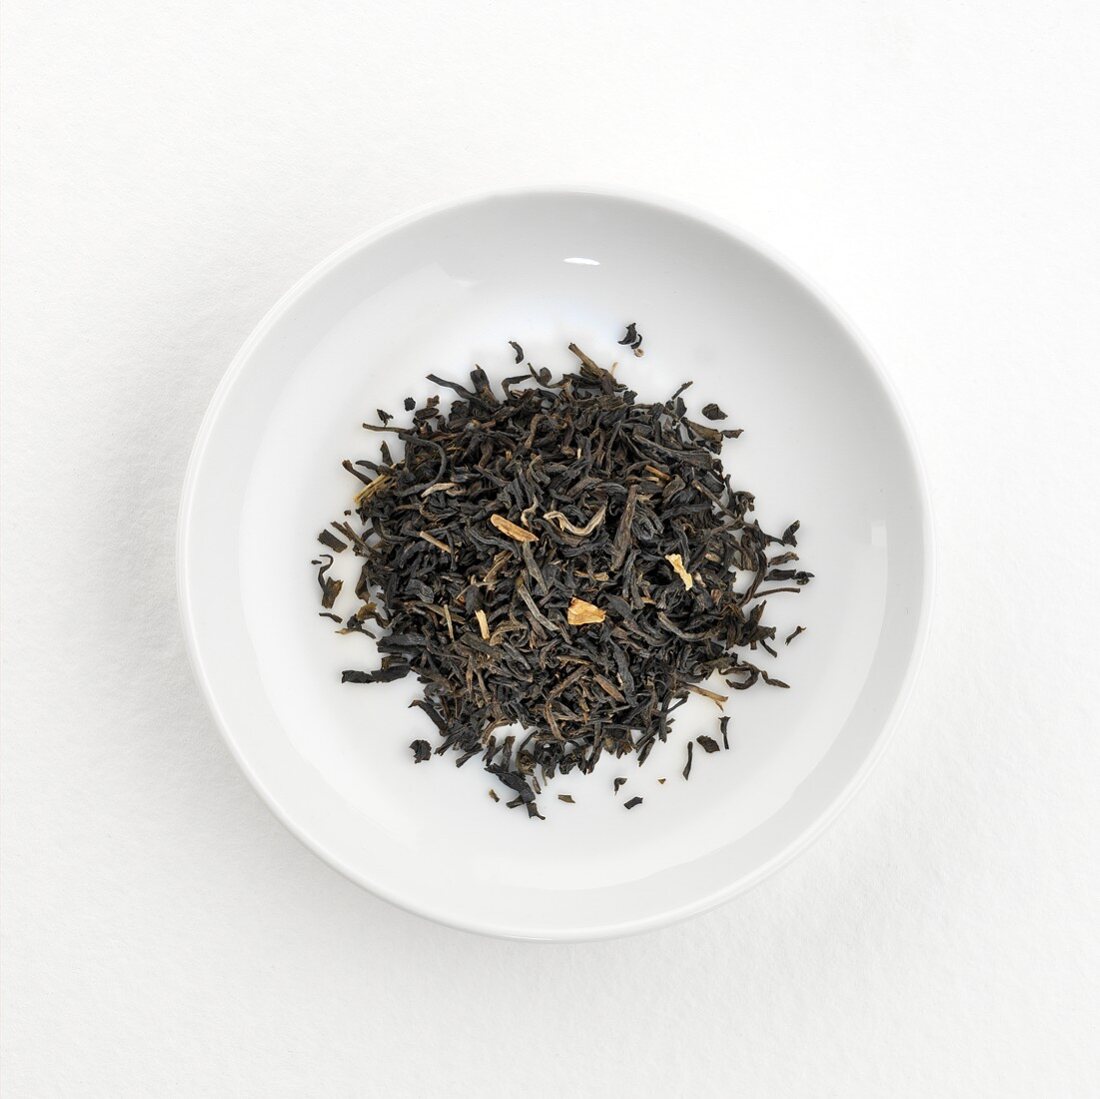 Jasmine tea (dry) on plate